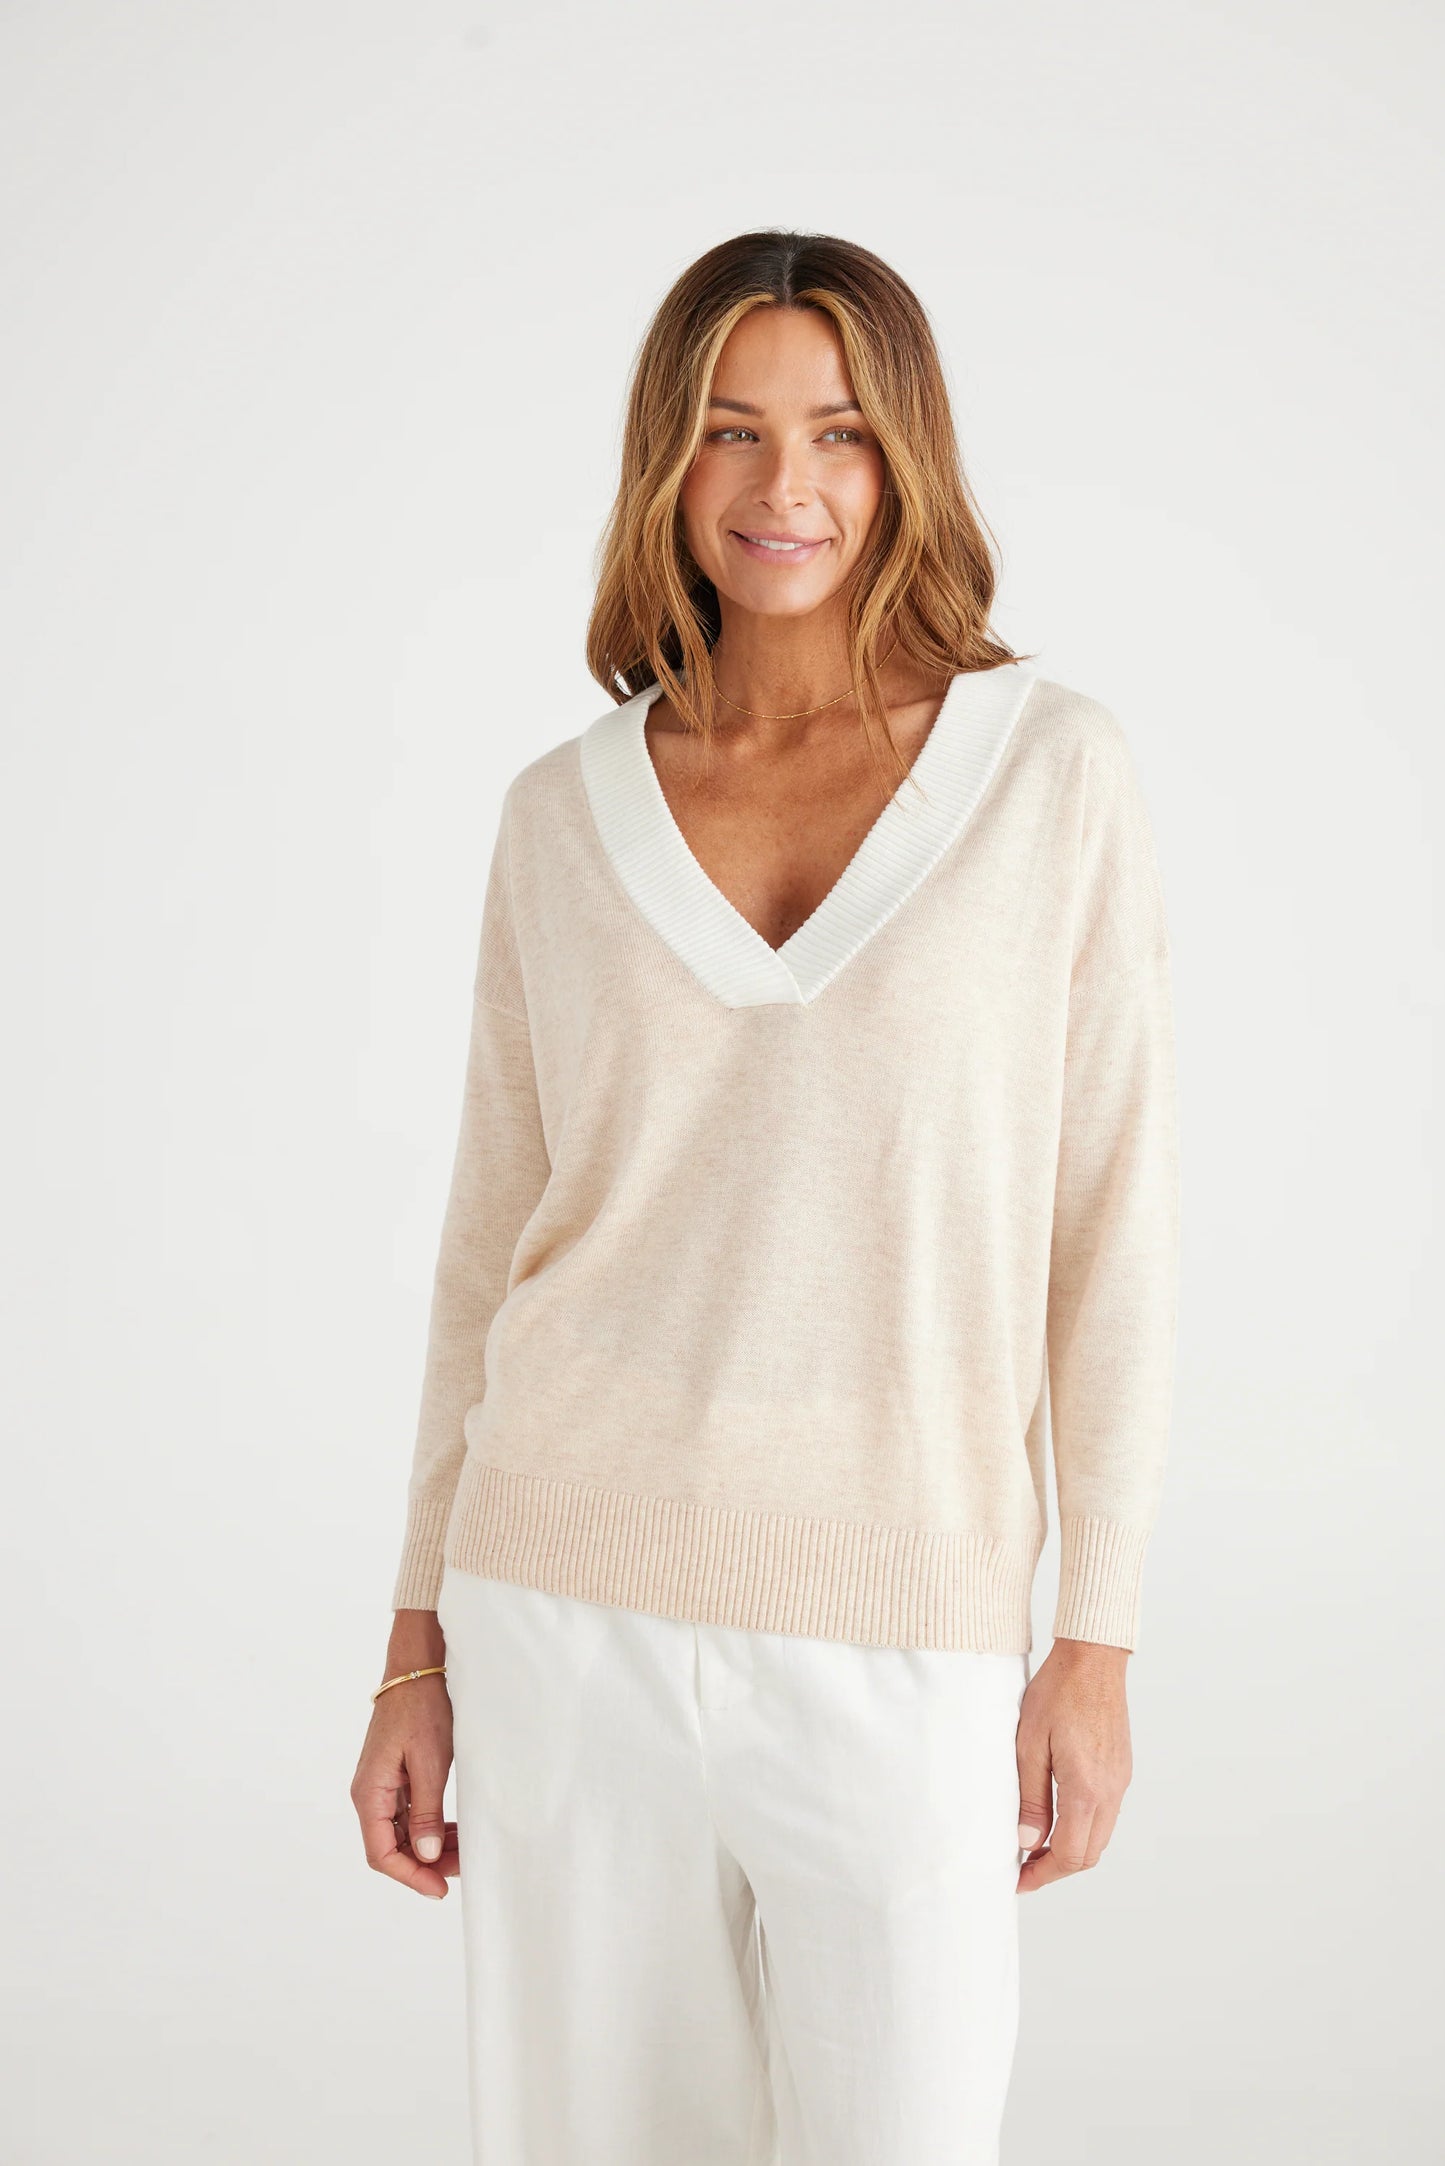 Brave + True Barcelona Knit White/Oat Sweater